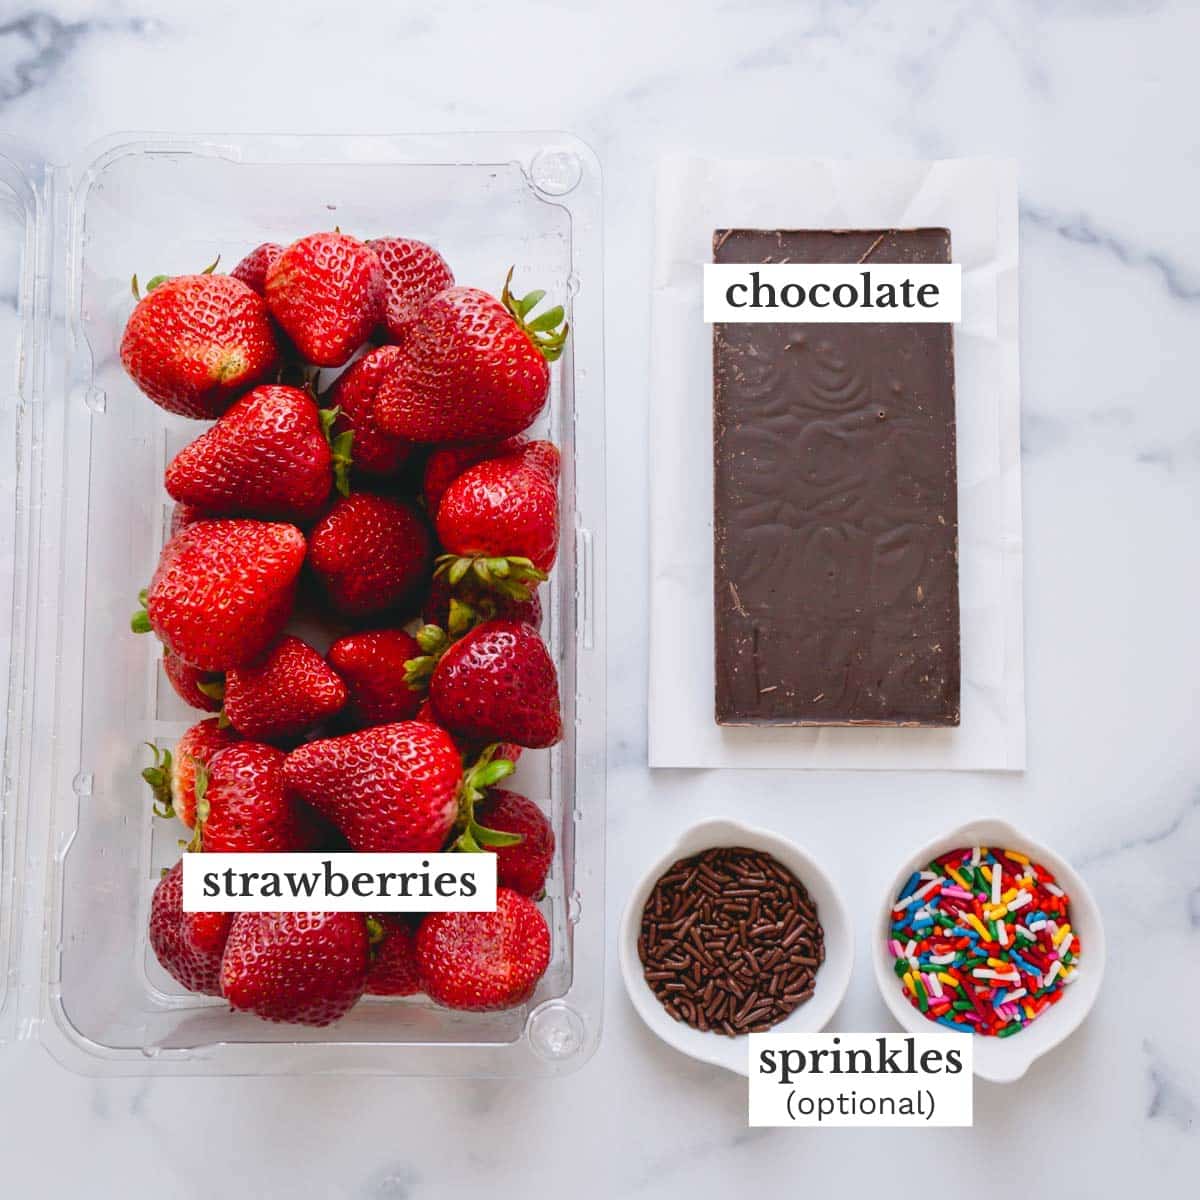 Chocolate, a bar of chocolate, a bowl of chocolate sprinkles, and a bowl of colorful sprinkles.